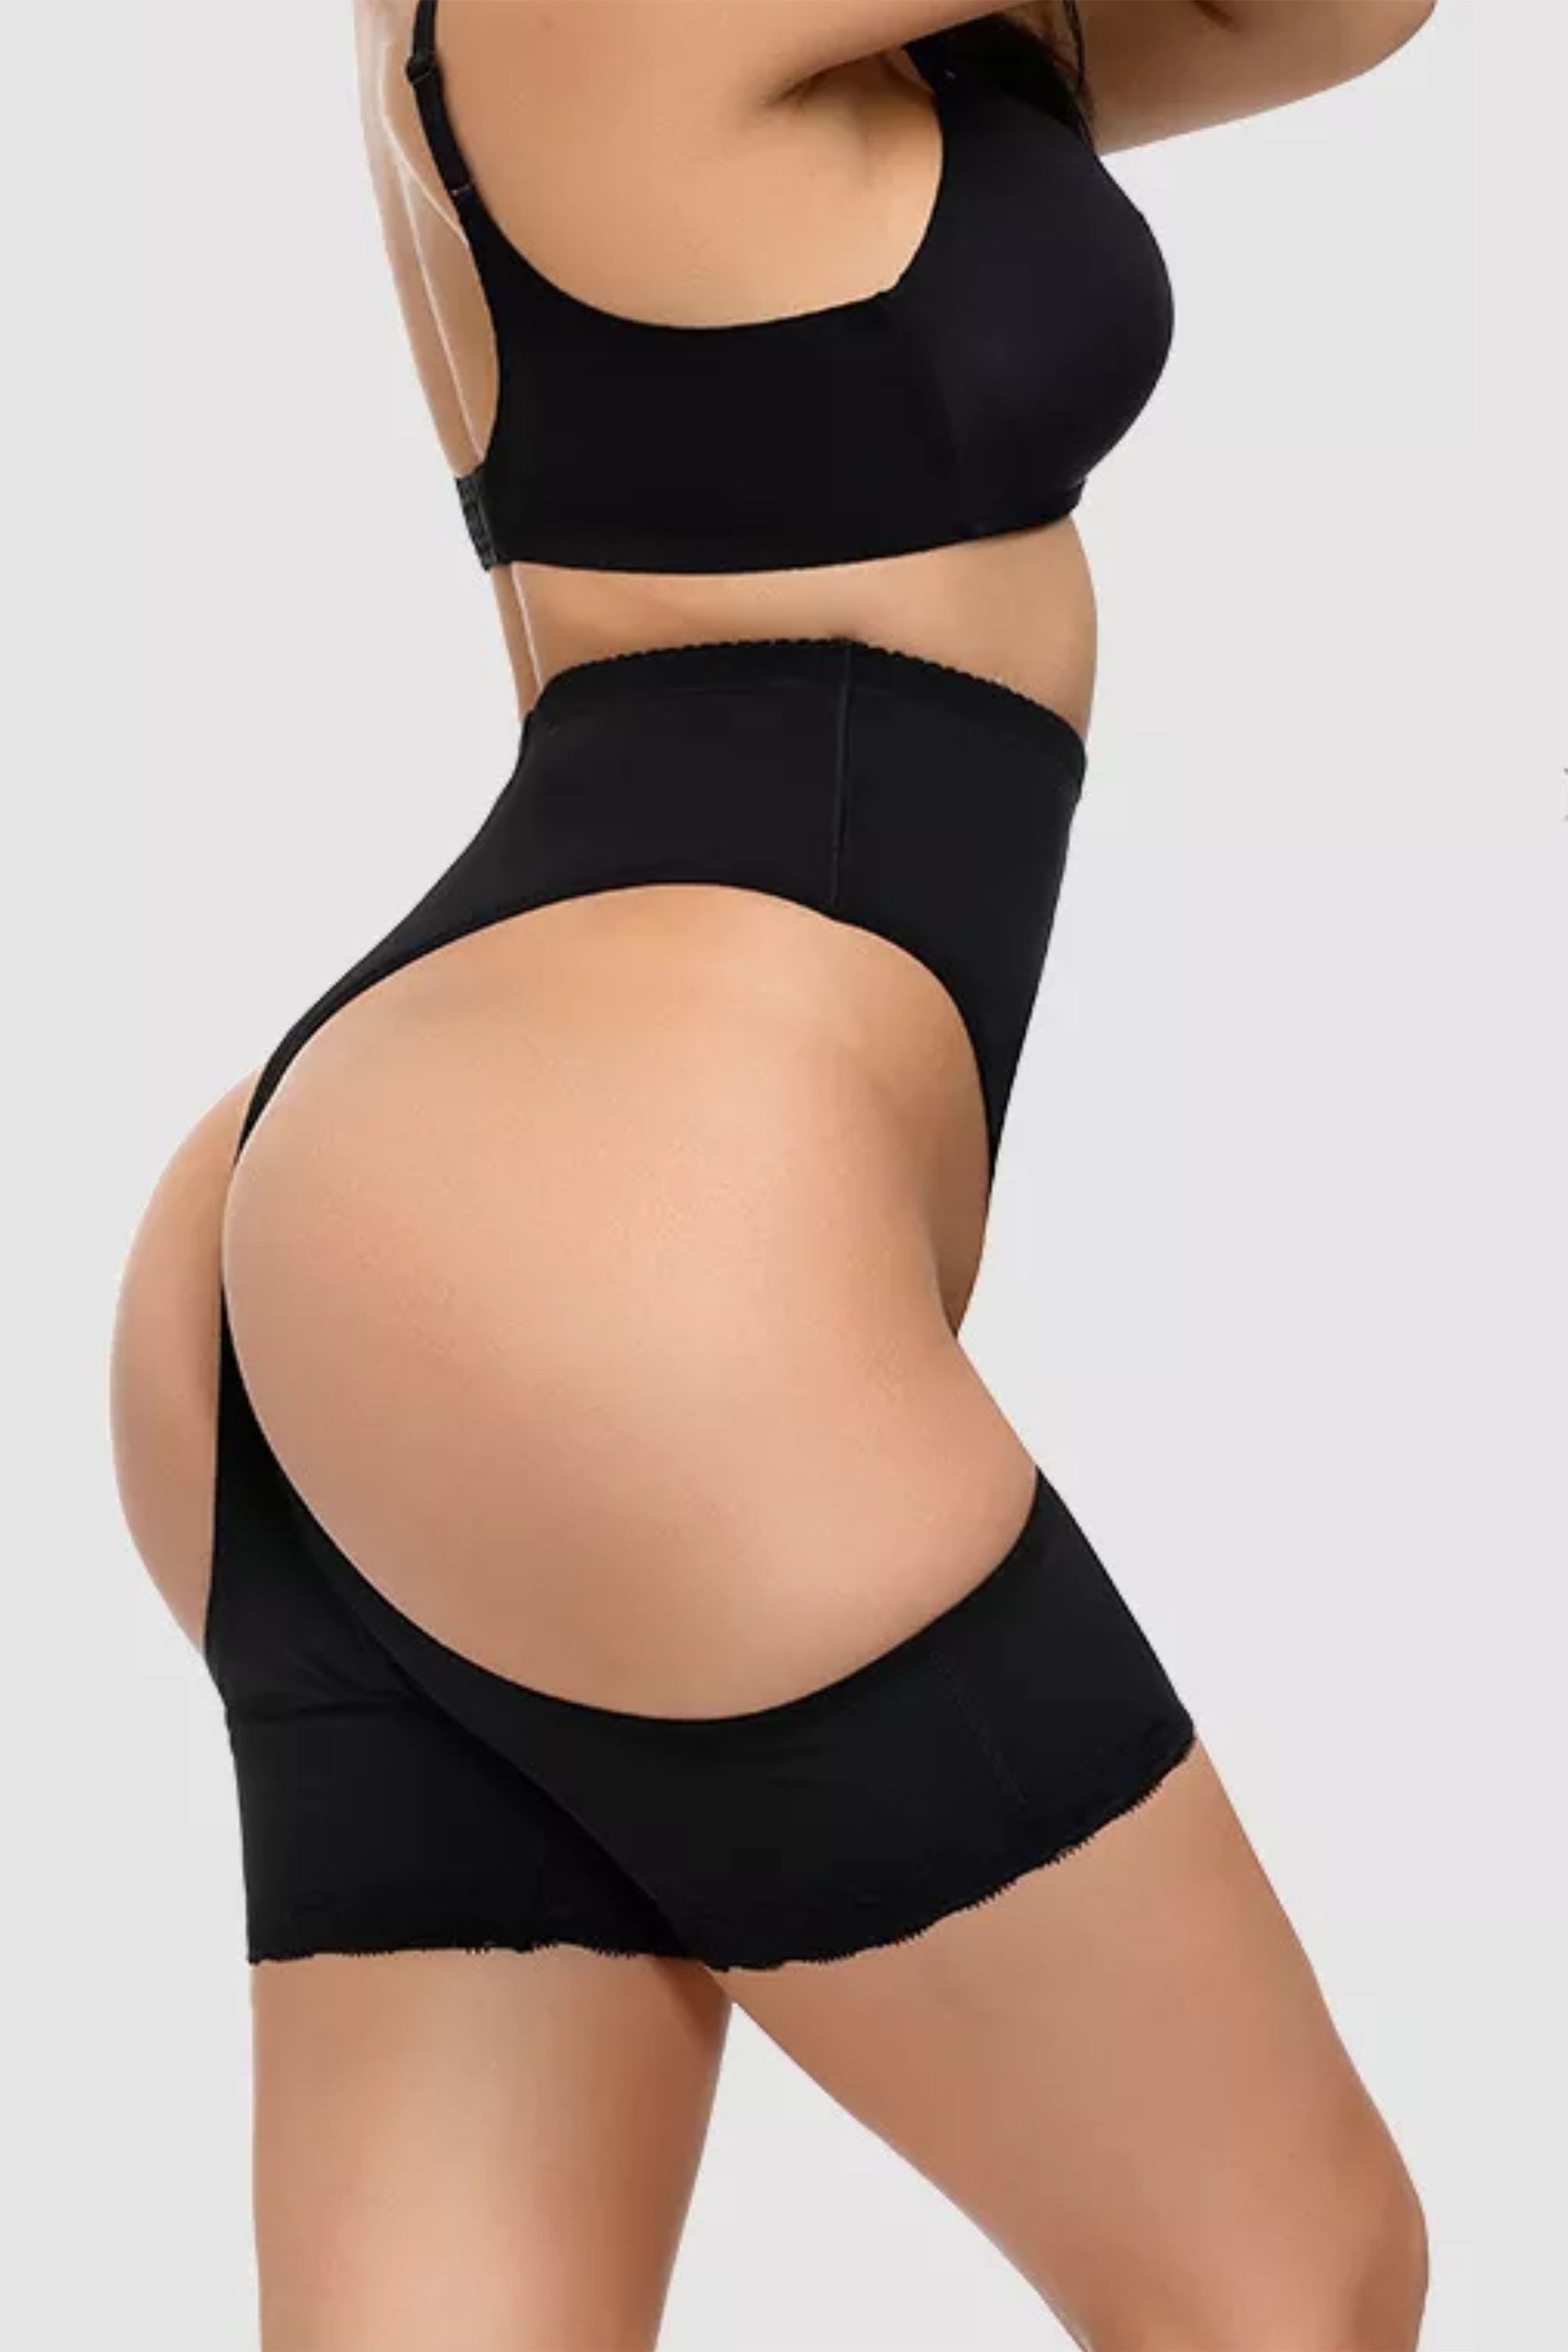 Chiloti modelatori Lily - push-up & corset - Negru